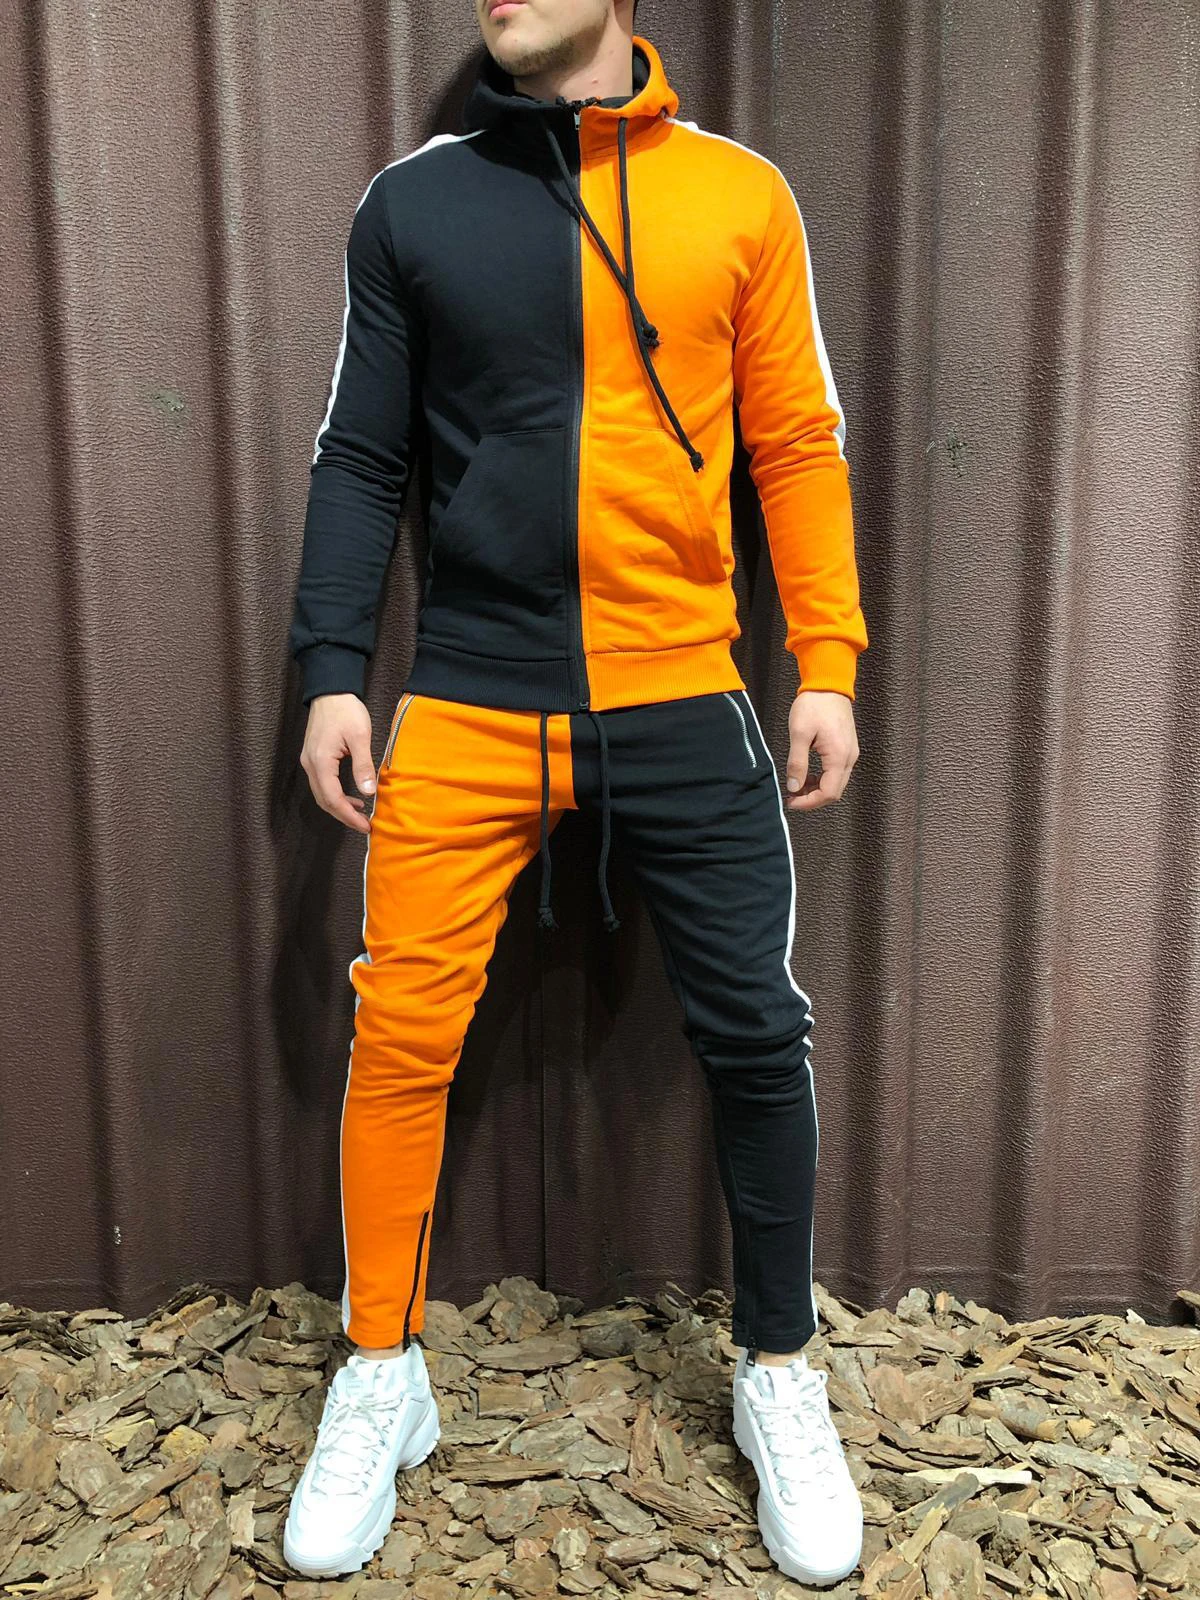 WENYUJH осенний спортивный костюм из 2 предметов для мужчин, повседневный спортивный костюм в стиле пэчворк, толстовка с капюшоном, спортивные штаны, мужские джоггеры, костюмы худи 3XL - Цвет: Black orange